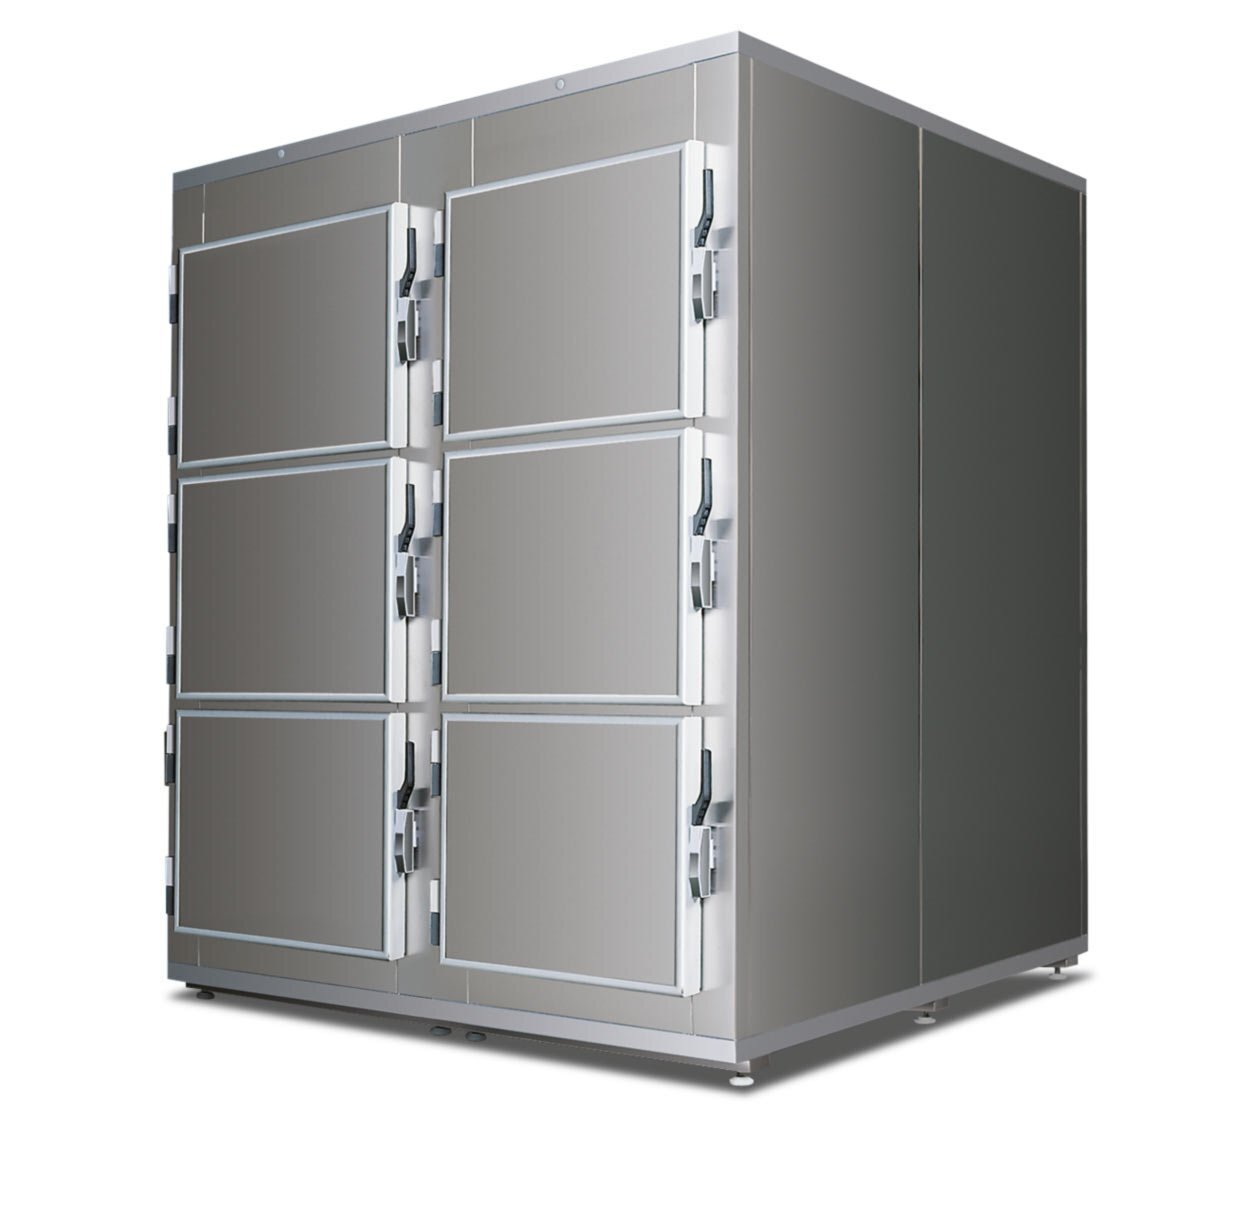 Cella frigorifera sei posti verticale - 6 porte con apertura frontale